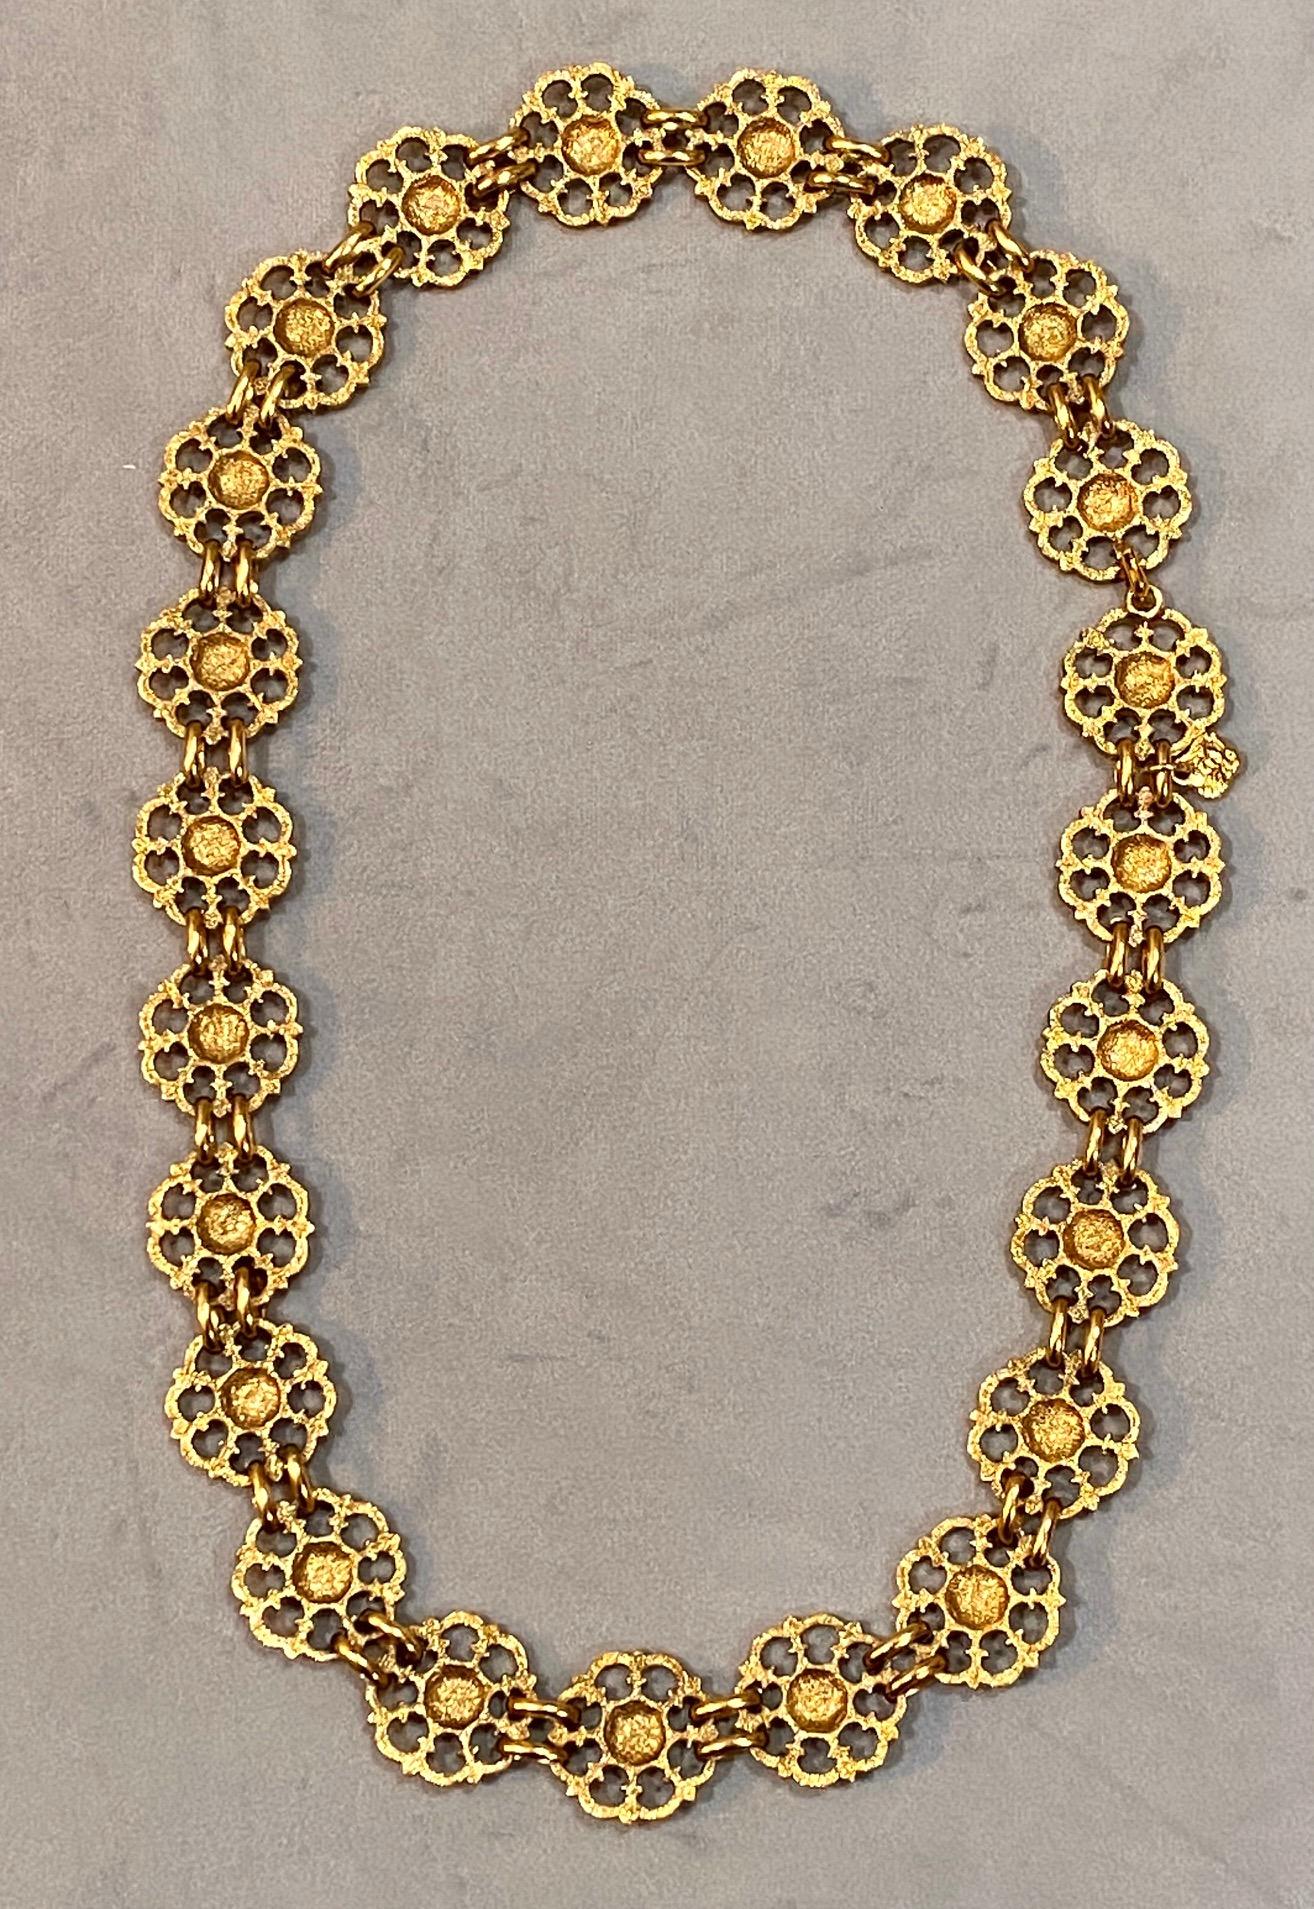 Yves Saint Laurent, Rive Gauche, 1980s Necklace / Belt For Sale 7